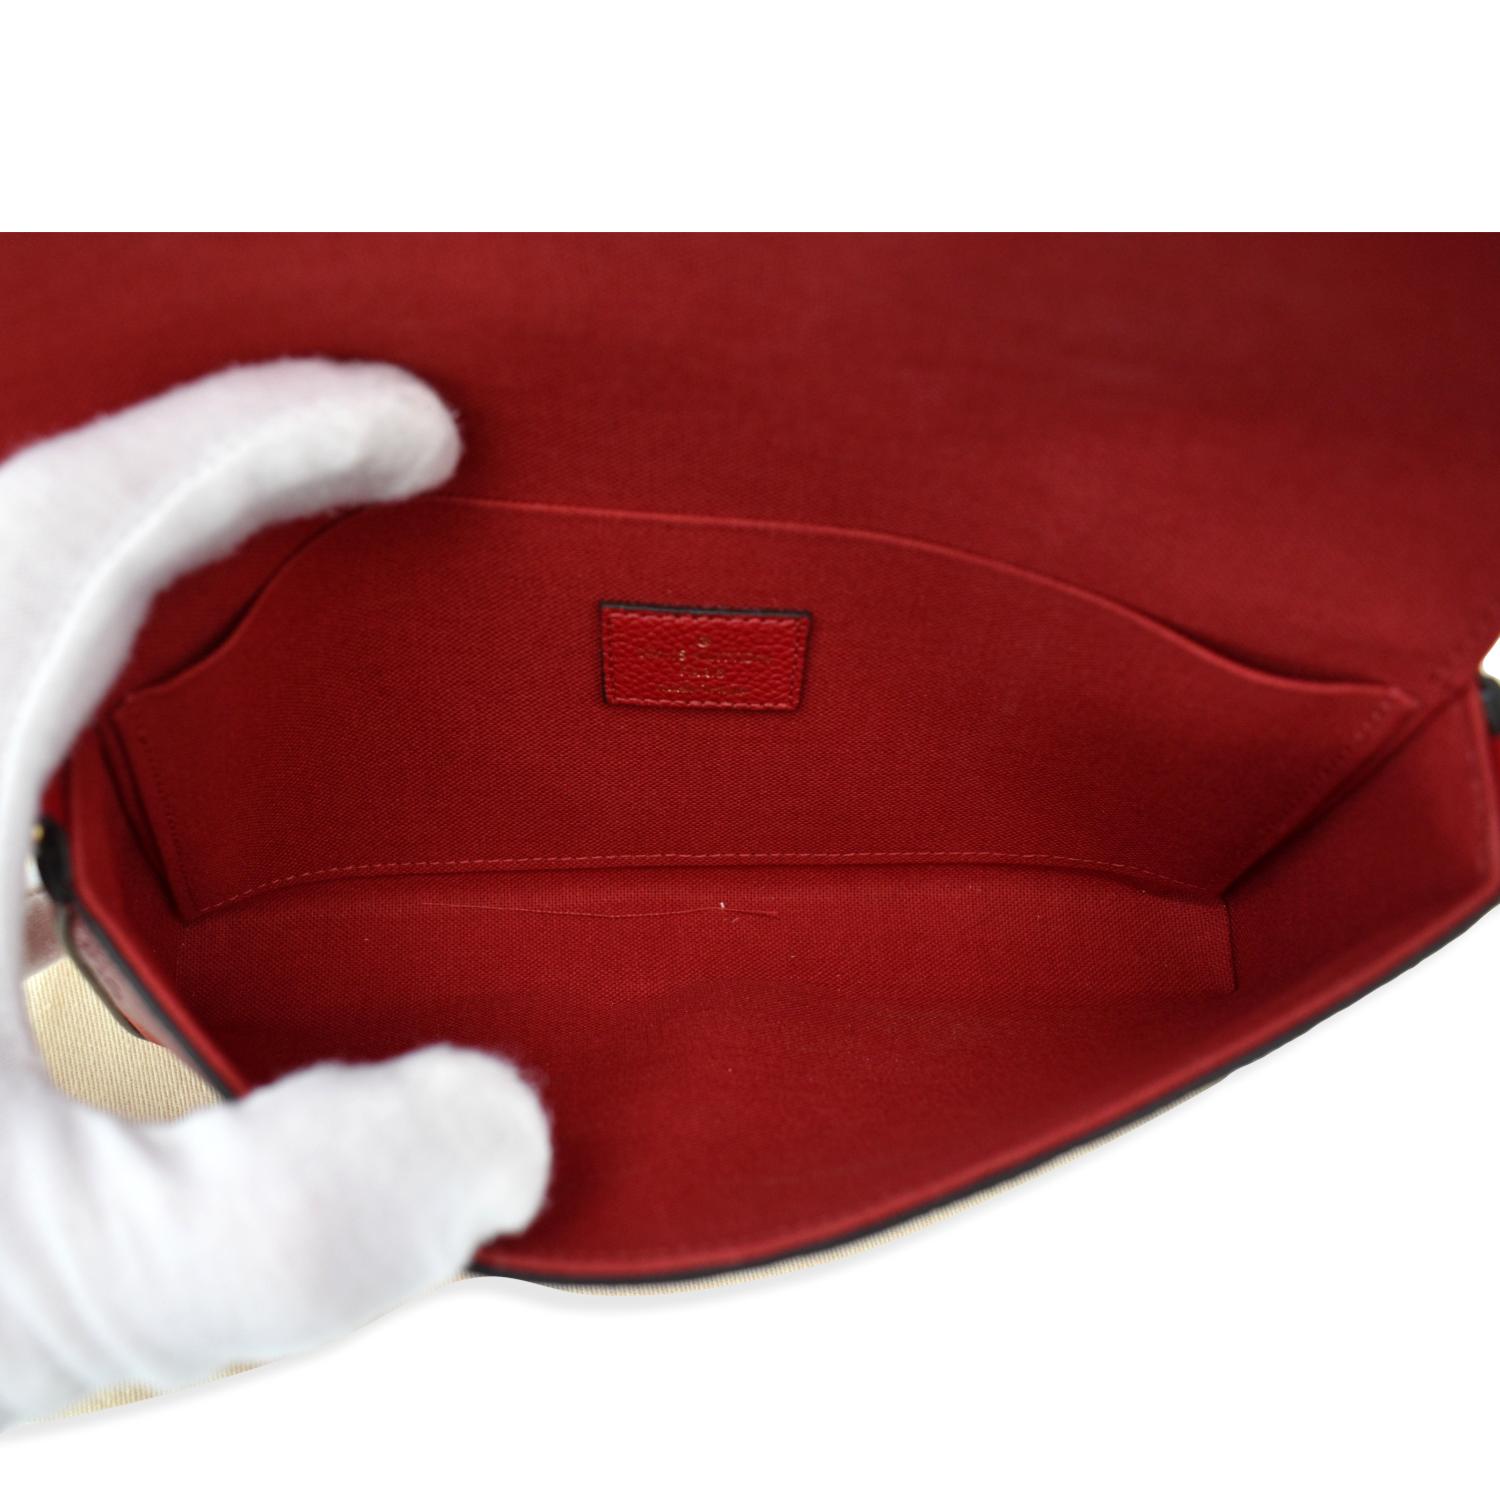 Louis Vuitton Pochette Felicie Monogram Empreinte Wallet Red